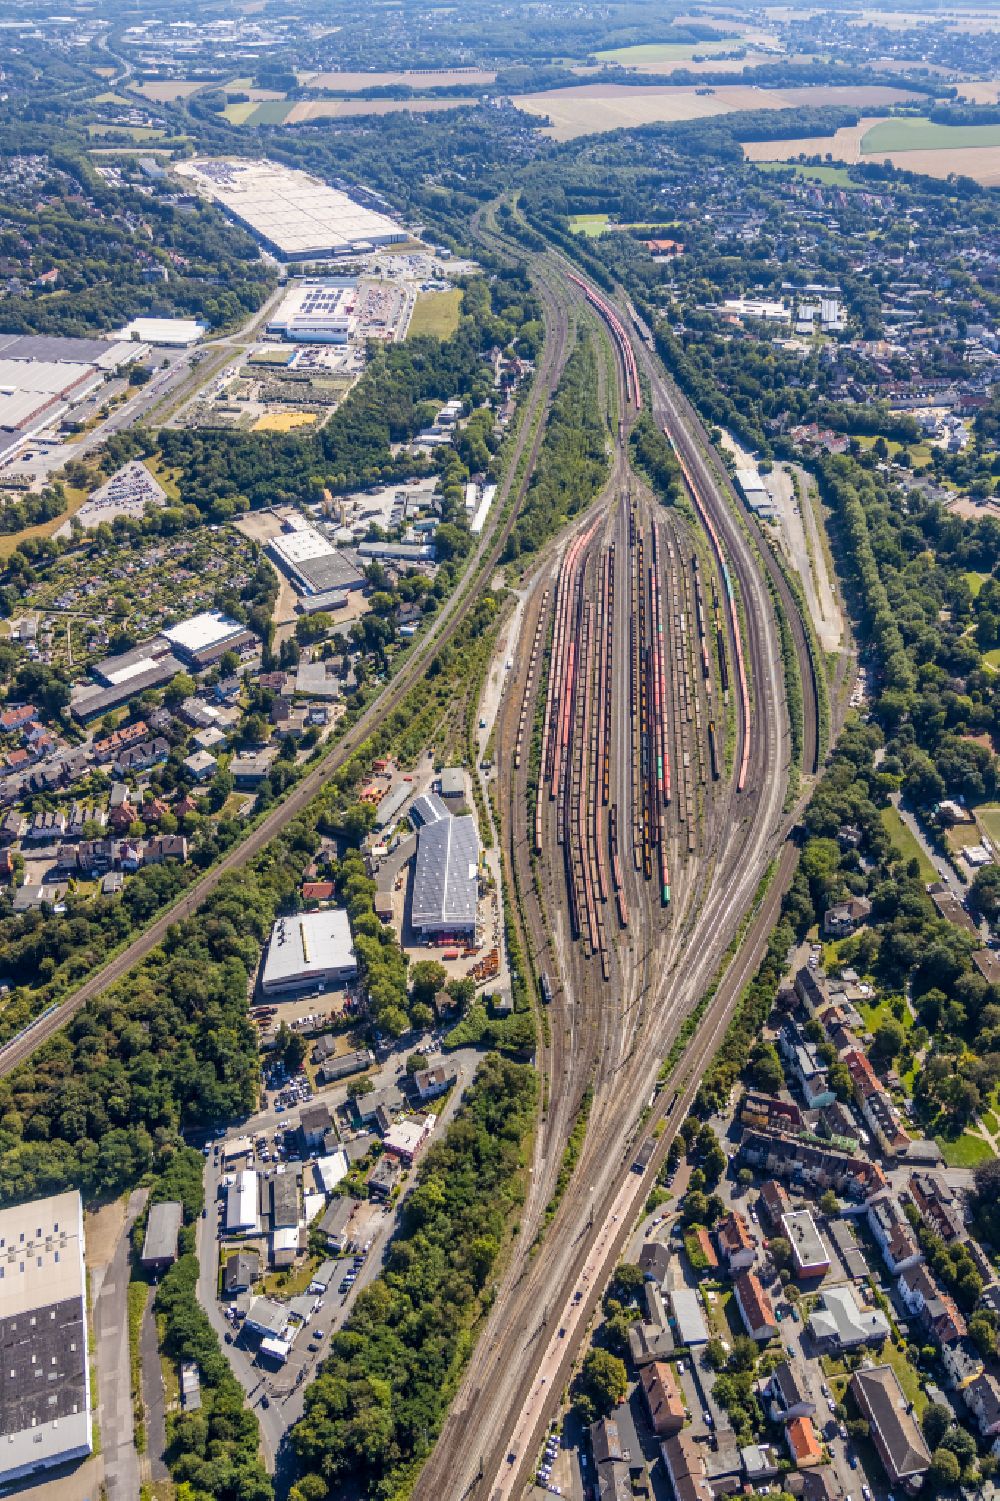 Luftbild Bochum - Rangierbahnhof und Güterbahnhof der Deutschen Bahn in Bochum im Bundesland Nordrhein-Westfalen, Deutschland